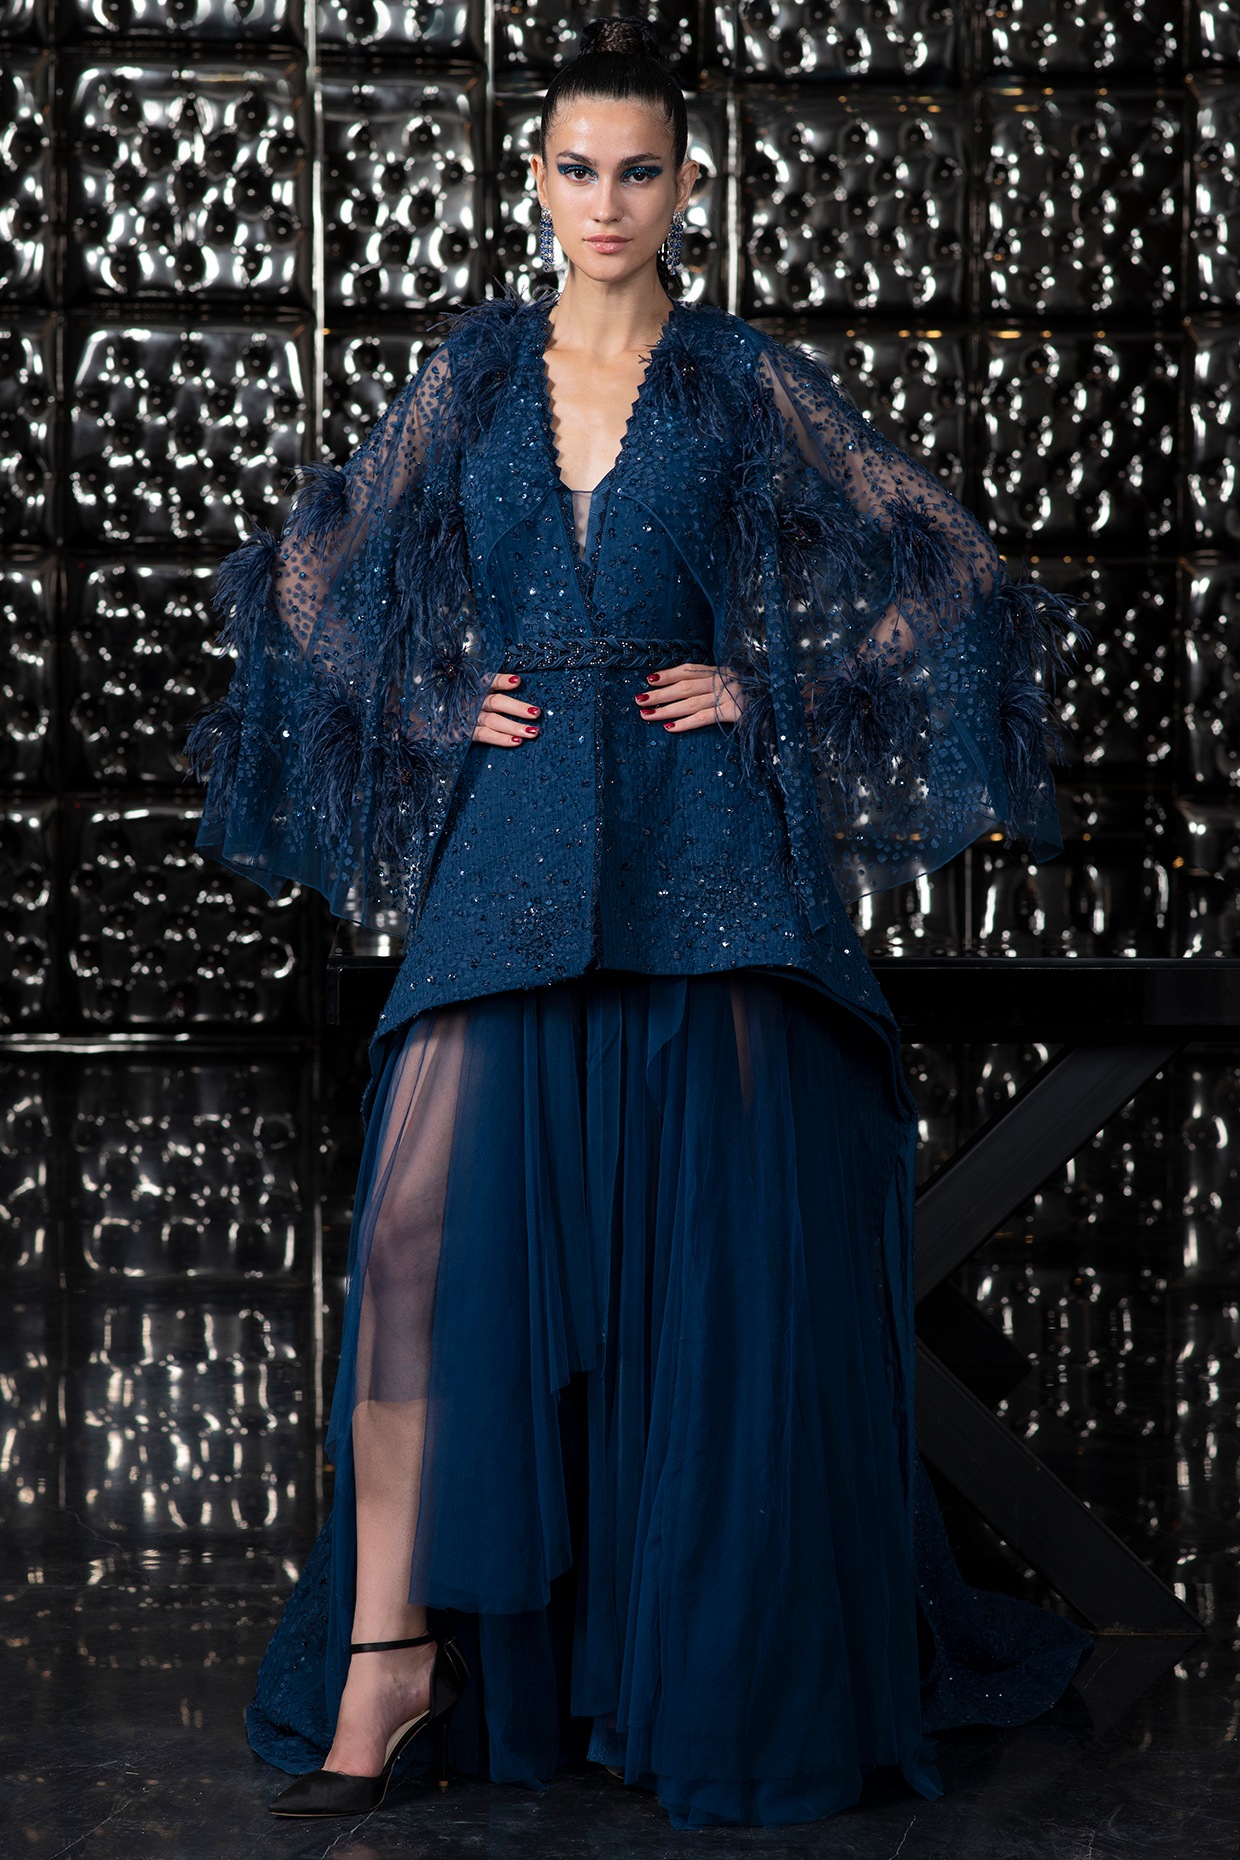 Designer Teal Blue Color Gown With Jacket